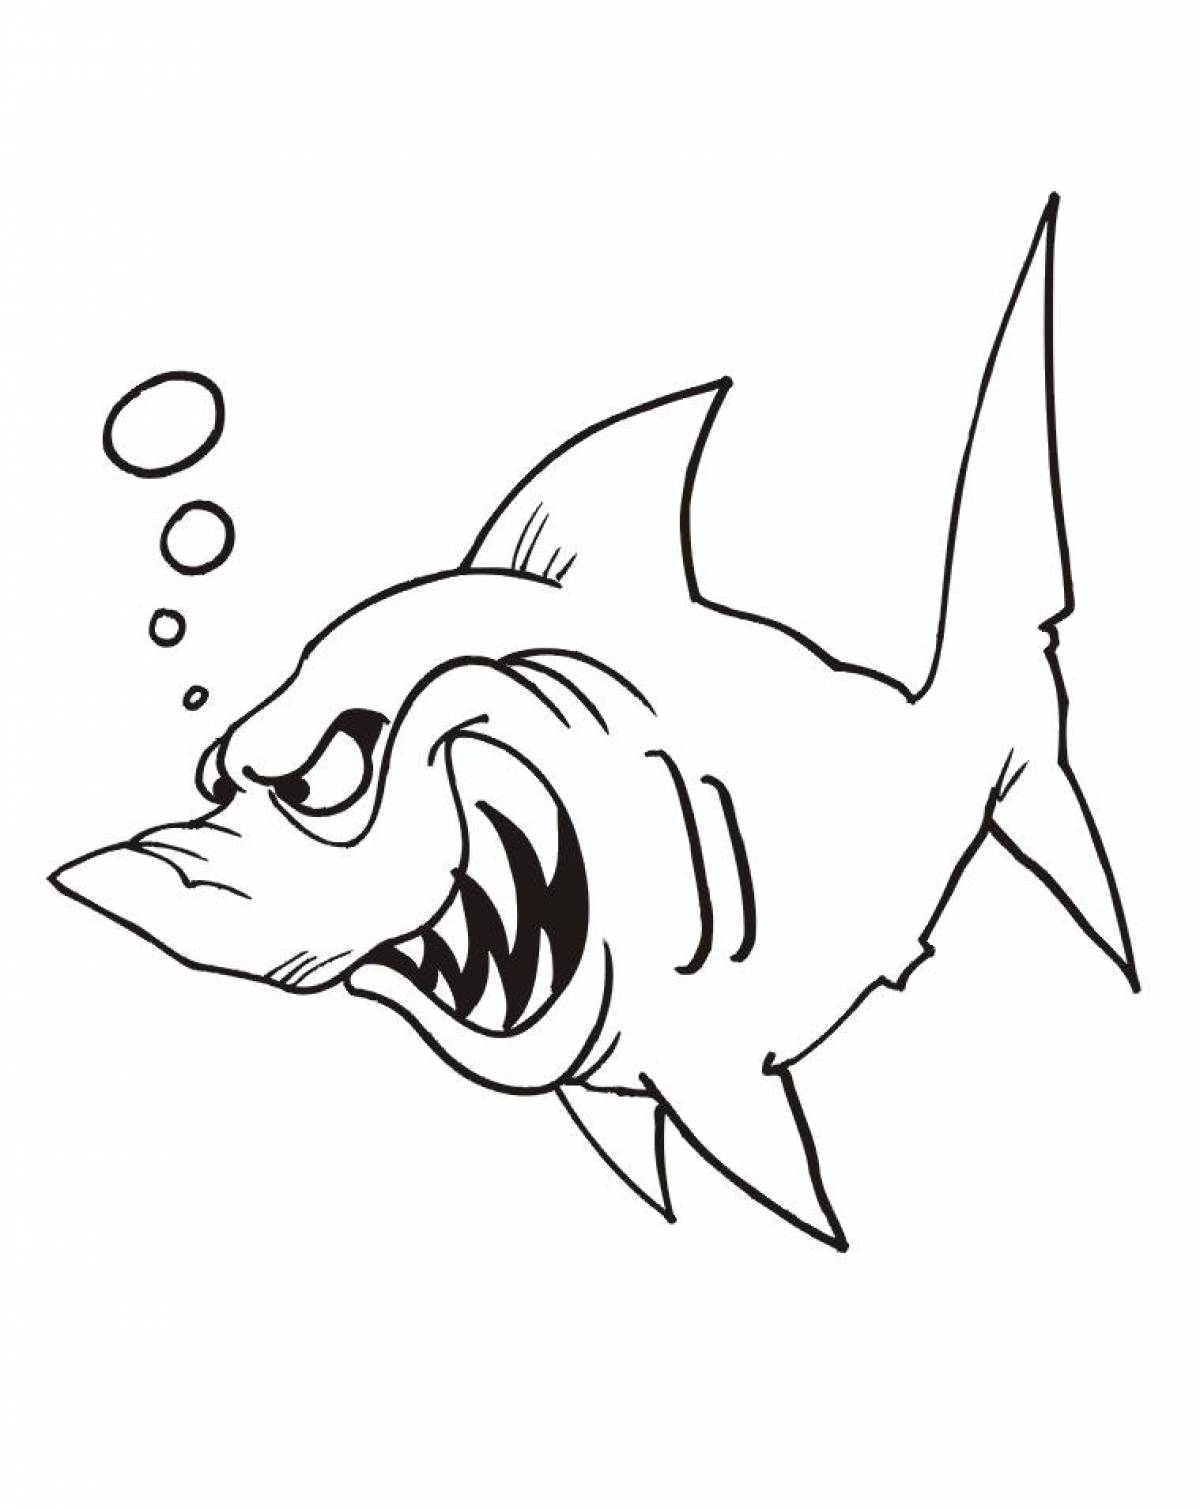 Креативная акула-раскраска для детей